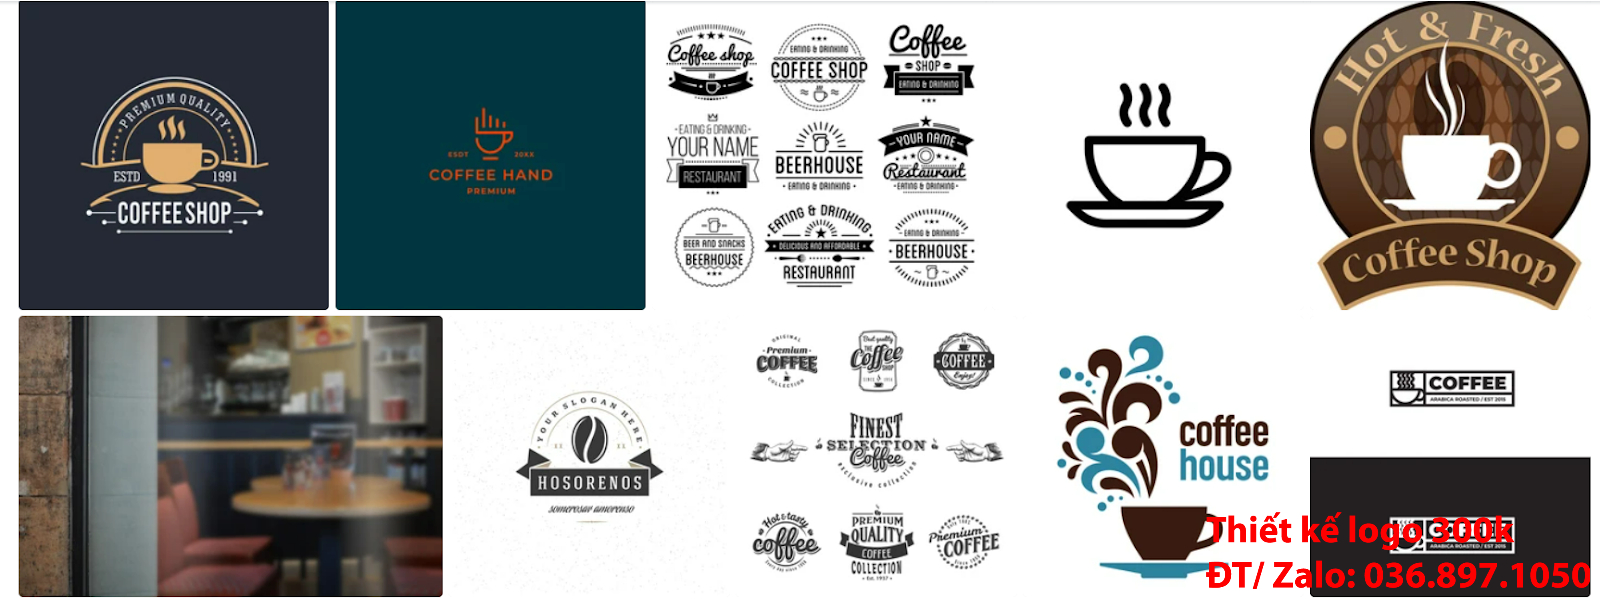 Dịch vụ tạo mẫu thiết kế logo cà phê cafe coffee đẹp giá rẻ uy tín